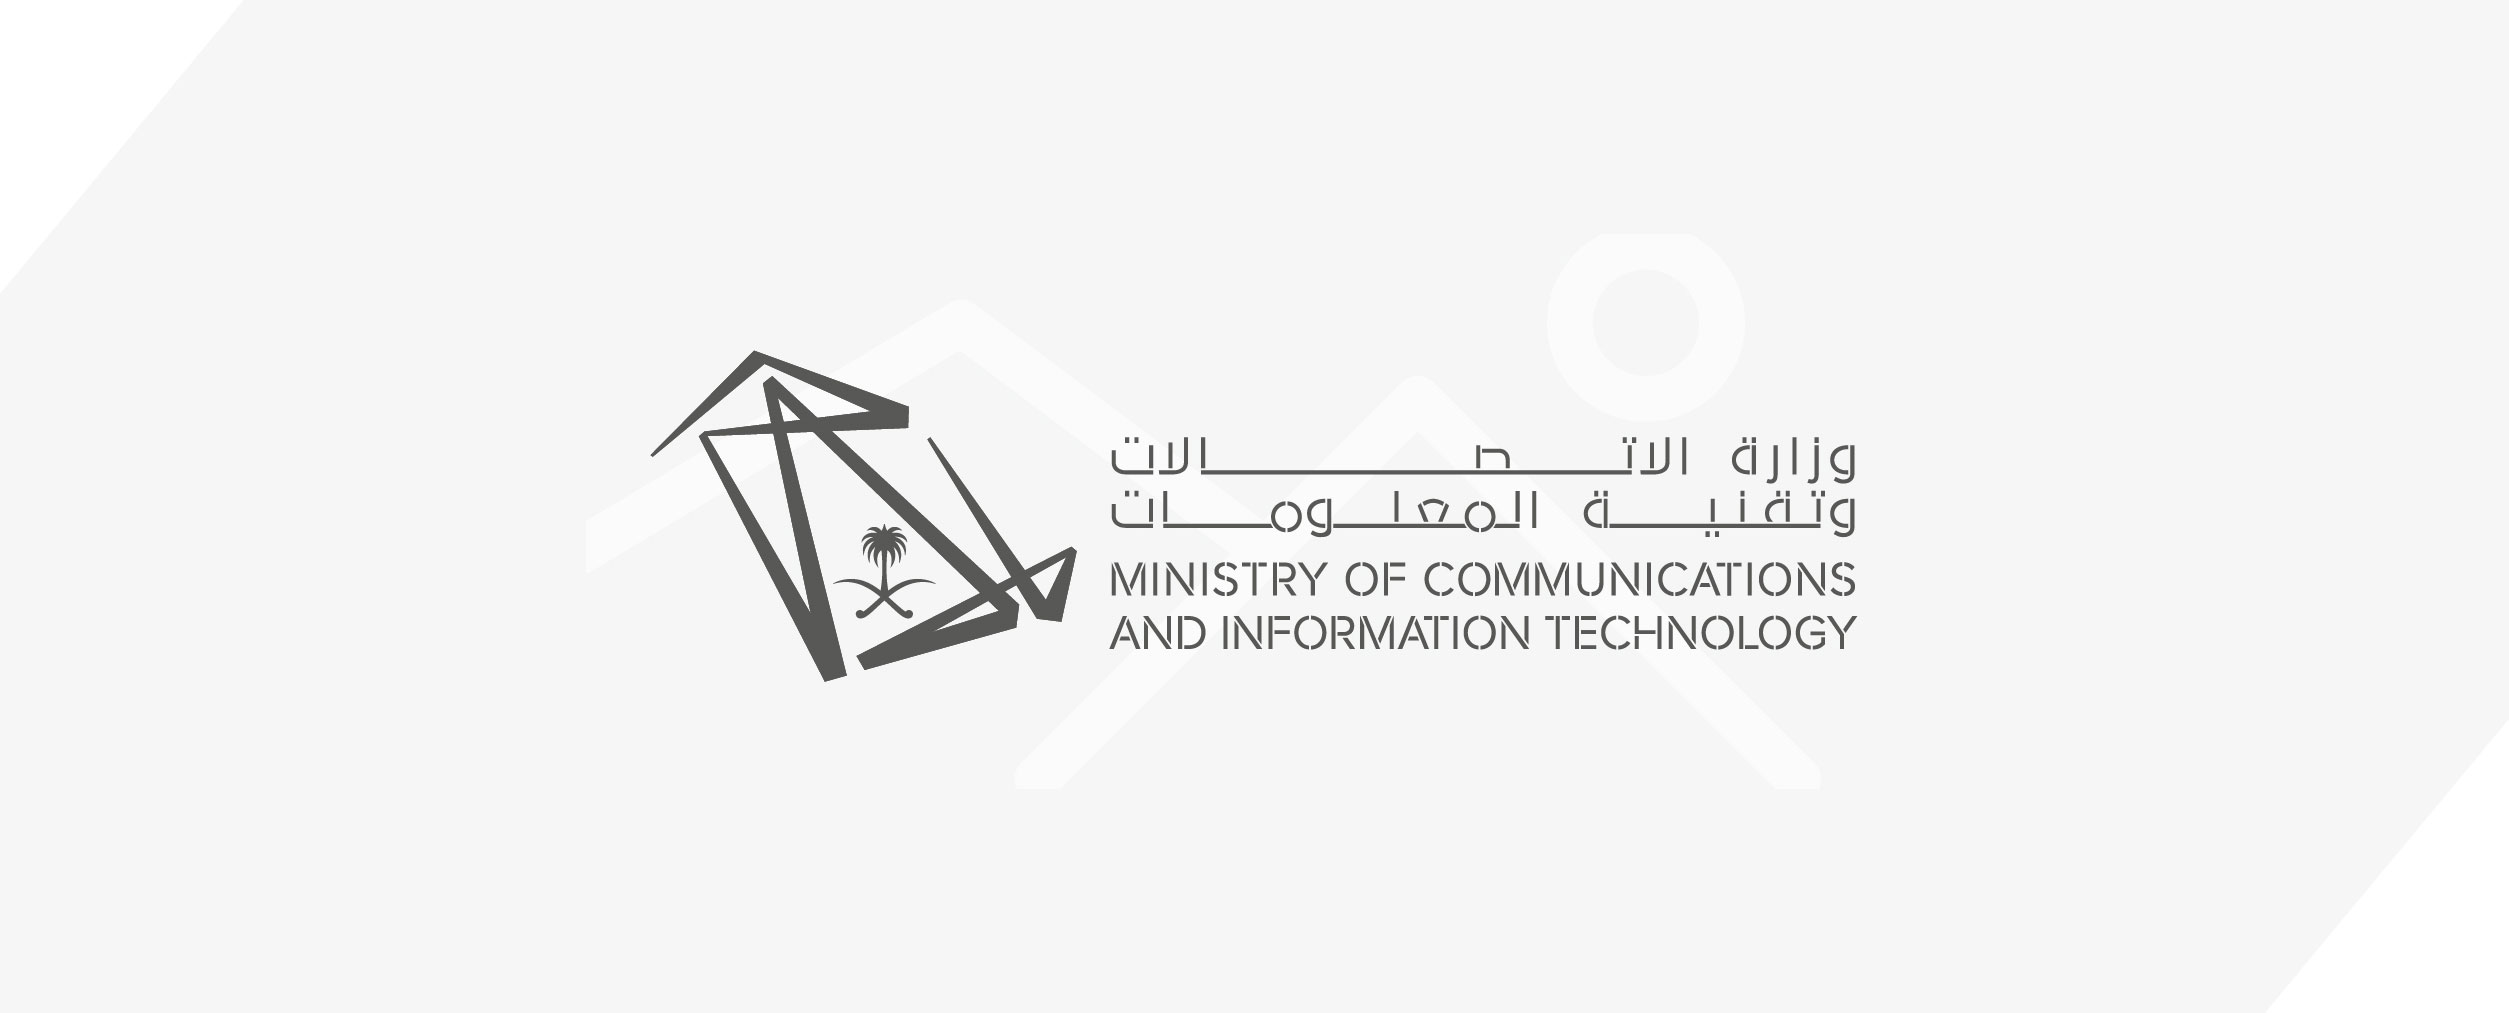 المملكة تشارك في اجتماع الجمعية العمومية لمنظمة التعاون الرقمي في مملكة البحرين